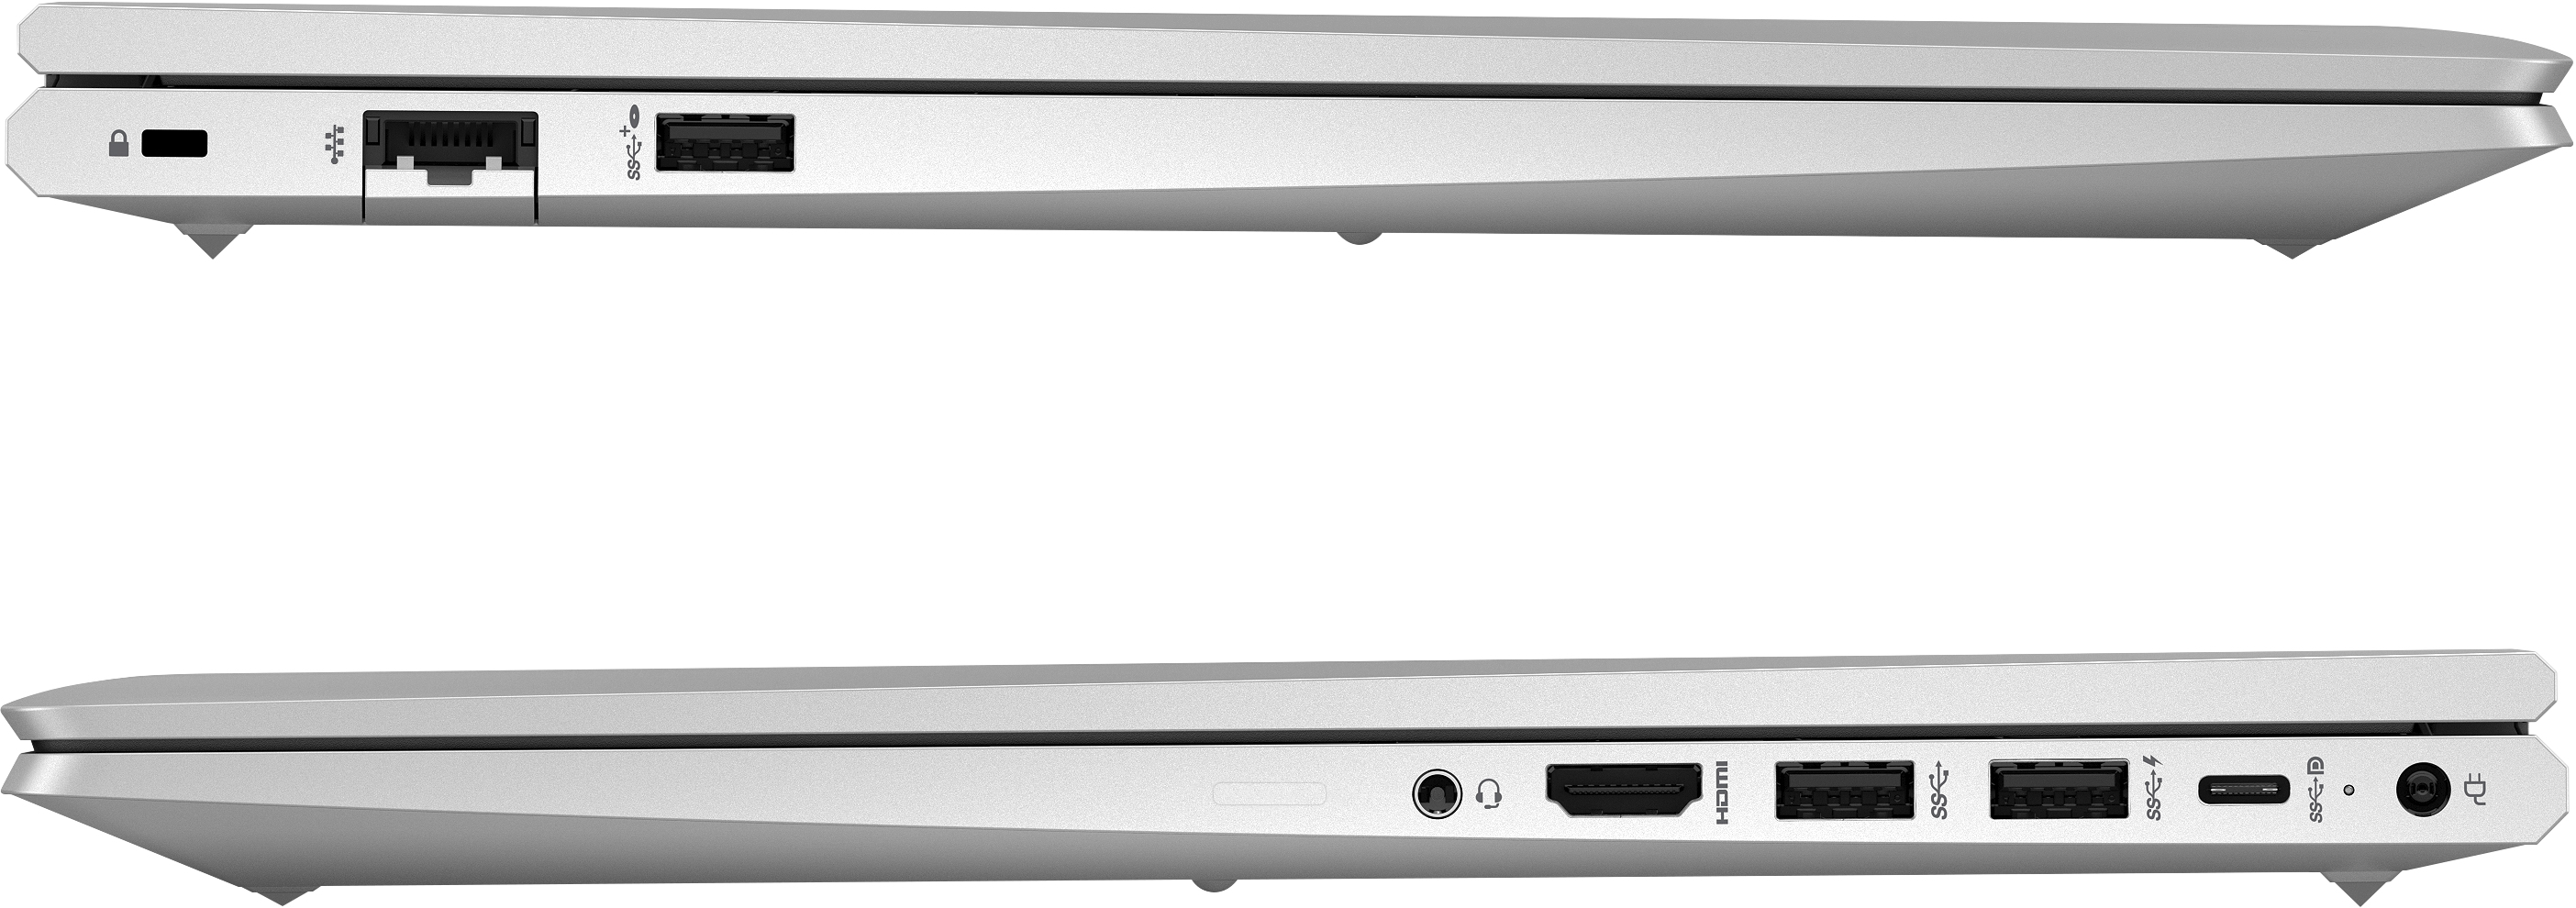 HP ProBook 455 15.6 inch G9 Notebook PC [5N4N4EA]